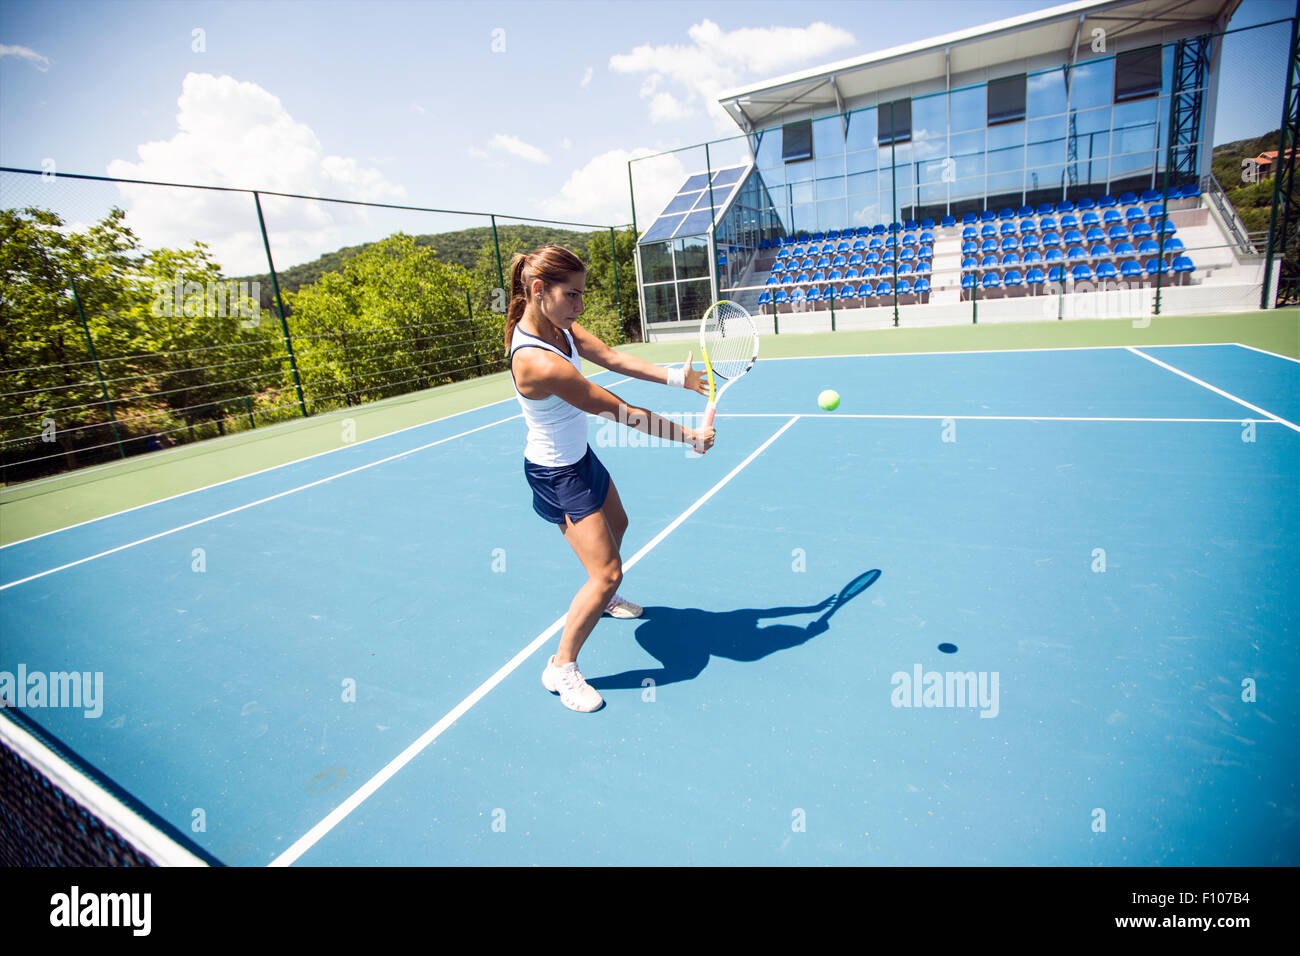 Tennis player effectuant un drop shot sur une belle cour bleu Banque D'Images